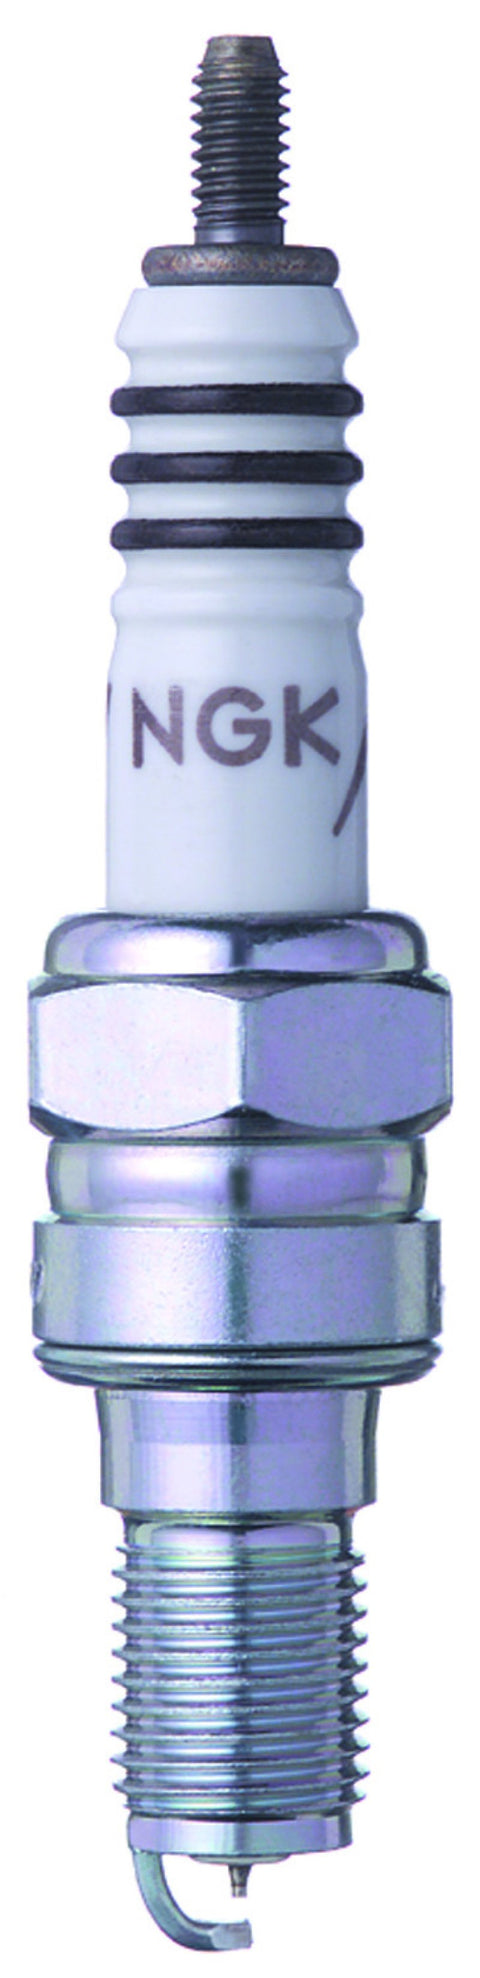 NGK Iridium IX Spark Plug (6216-1)